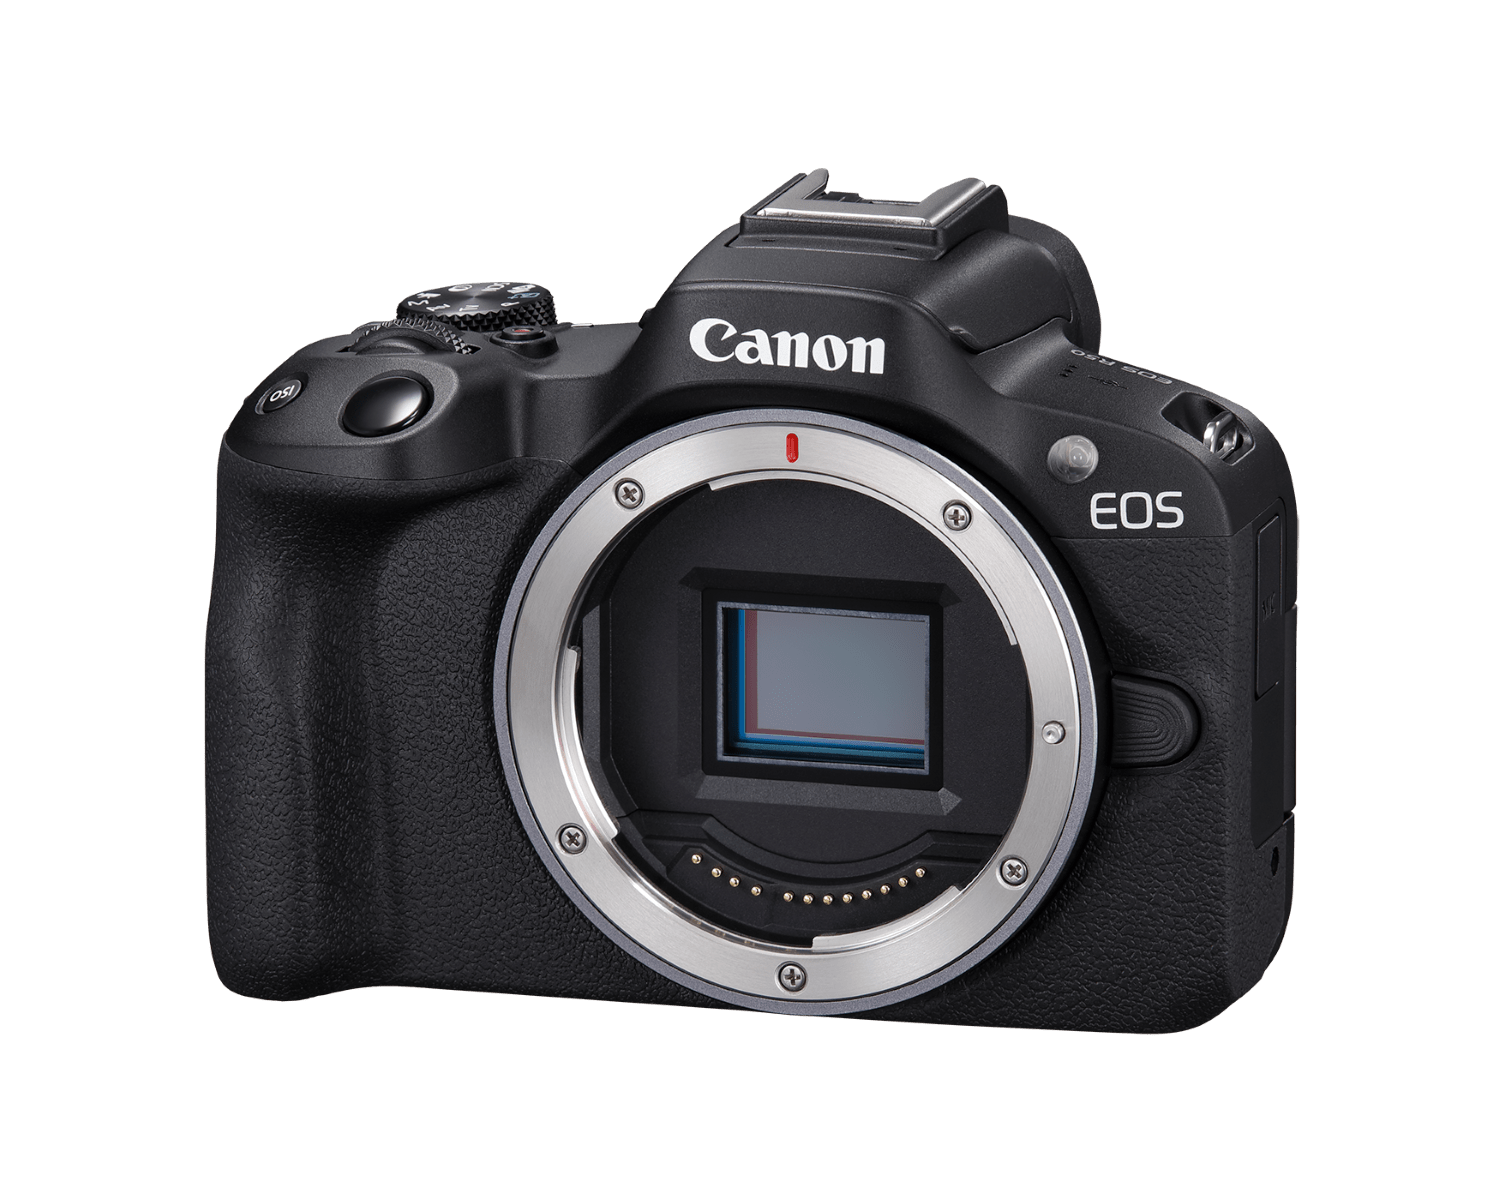 The Canon EOS R50